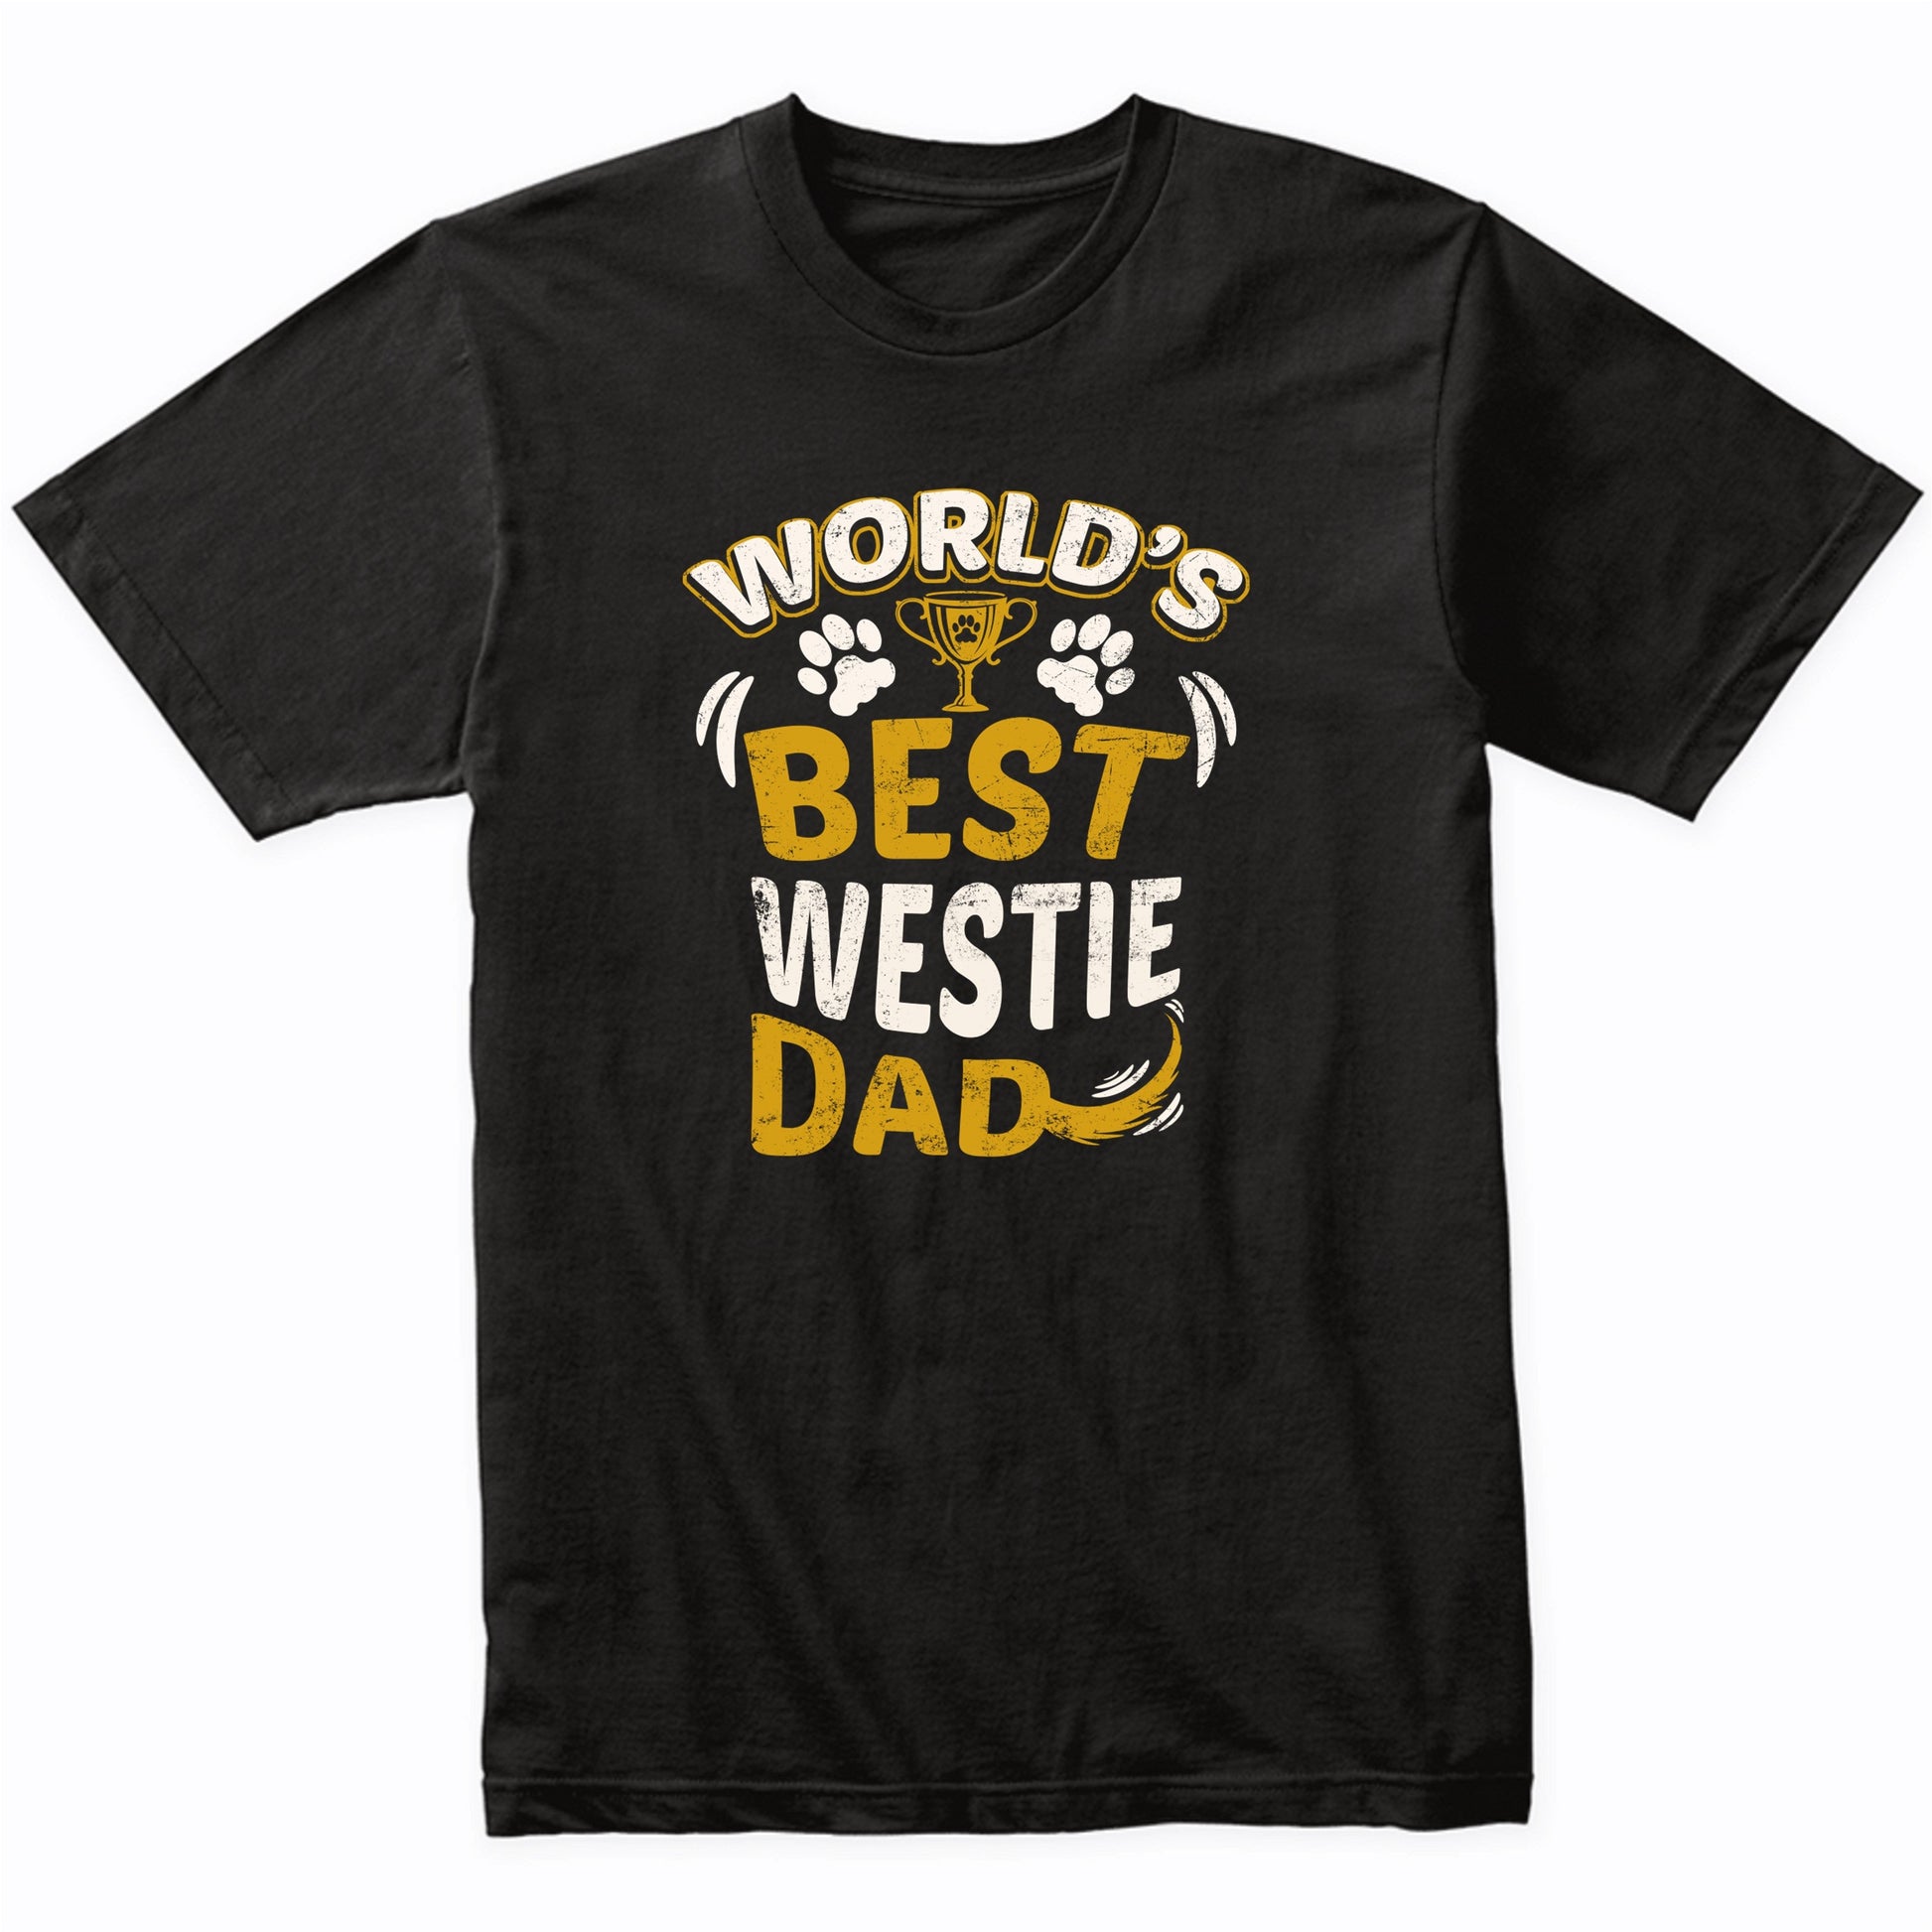 World's Best Westie Dad Graphic T-Shirt